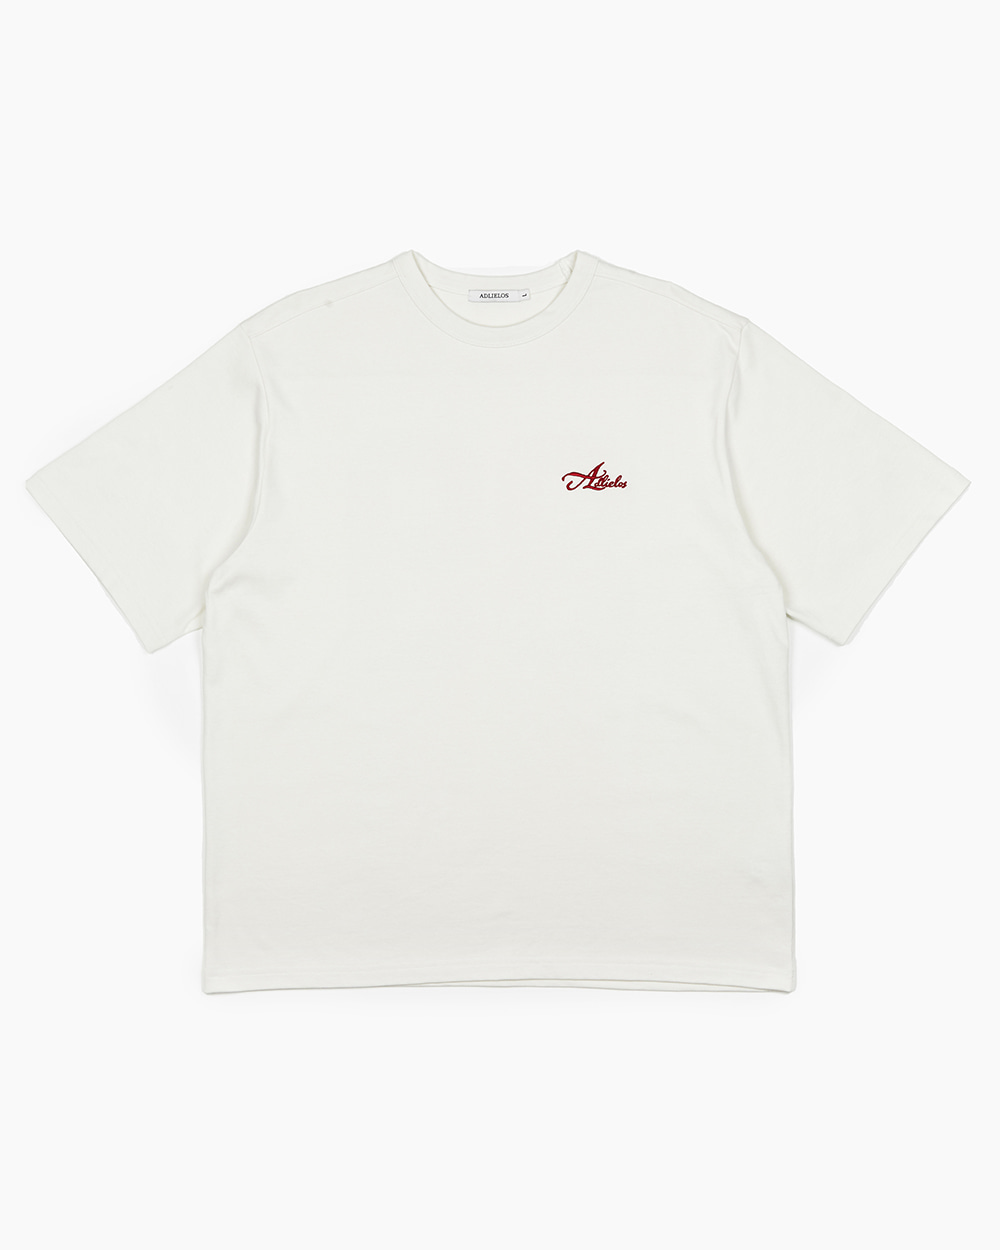 89 그래픽 하프 반팔 티셔츠 아이보리 레드